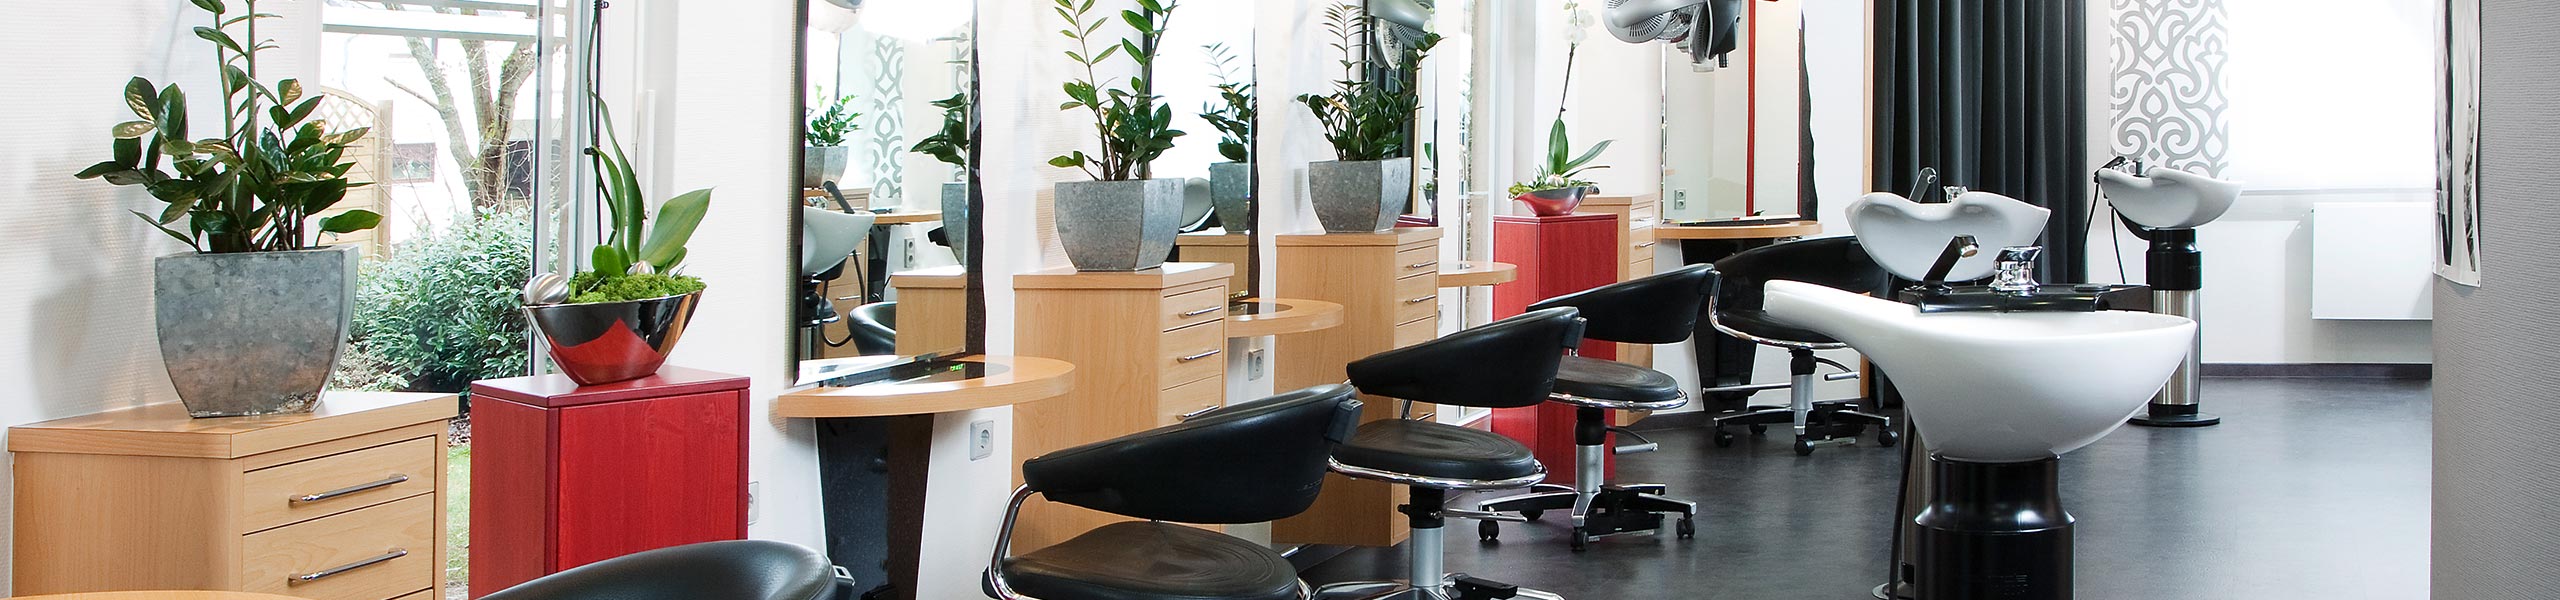 Kontakt zu Ihrem Friseur in 74722 Buchen (Odenwald) - Hair & Beauty Gossenberger